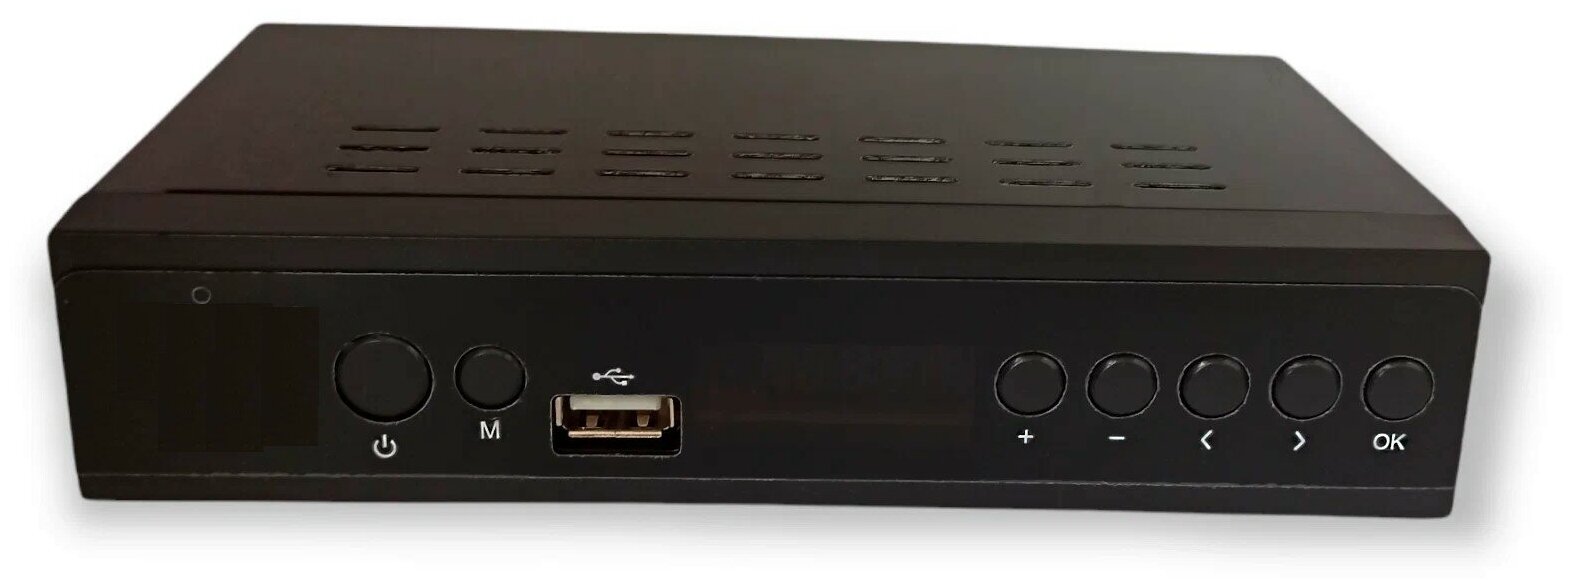 Тв тюнер тв тюнер для телевизора цифровой ресивер телевизионная приставка поддержка 1080p пульт ДУ прием DVB-T2 вход HDMI